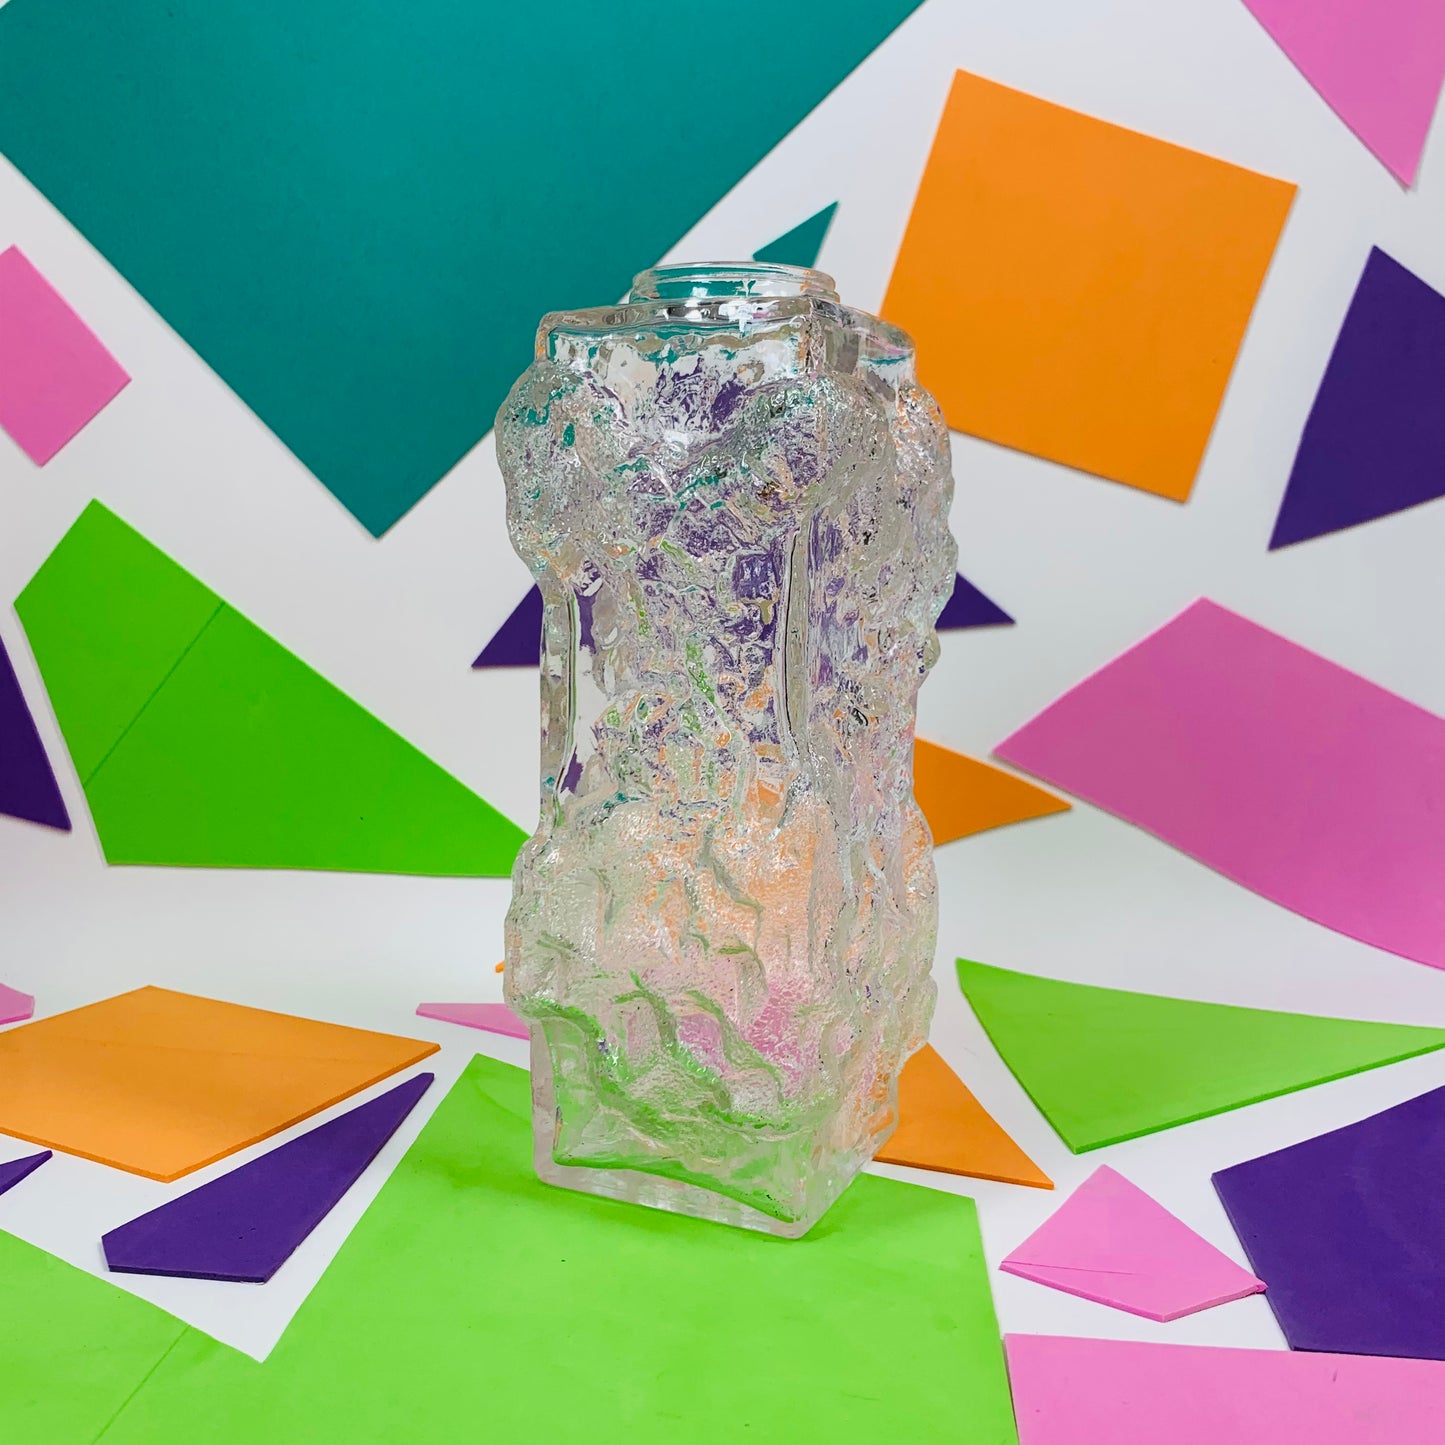 Extremely rare Midcentury Iittala glass vase